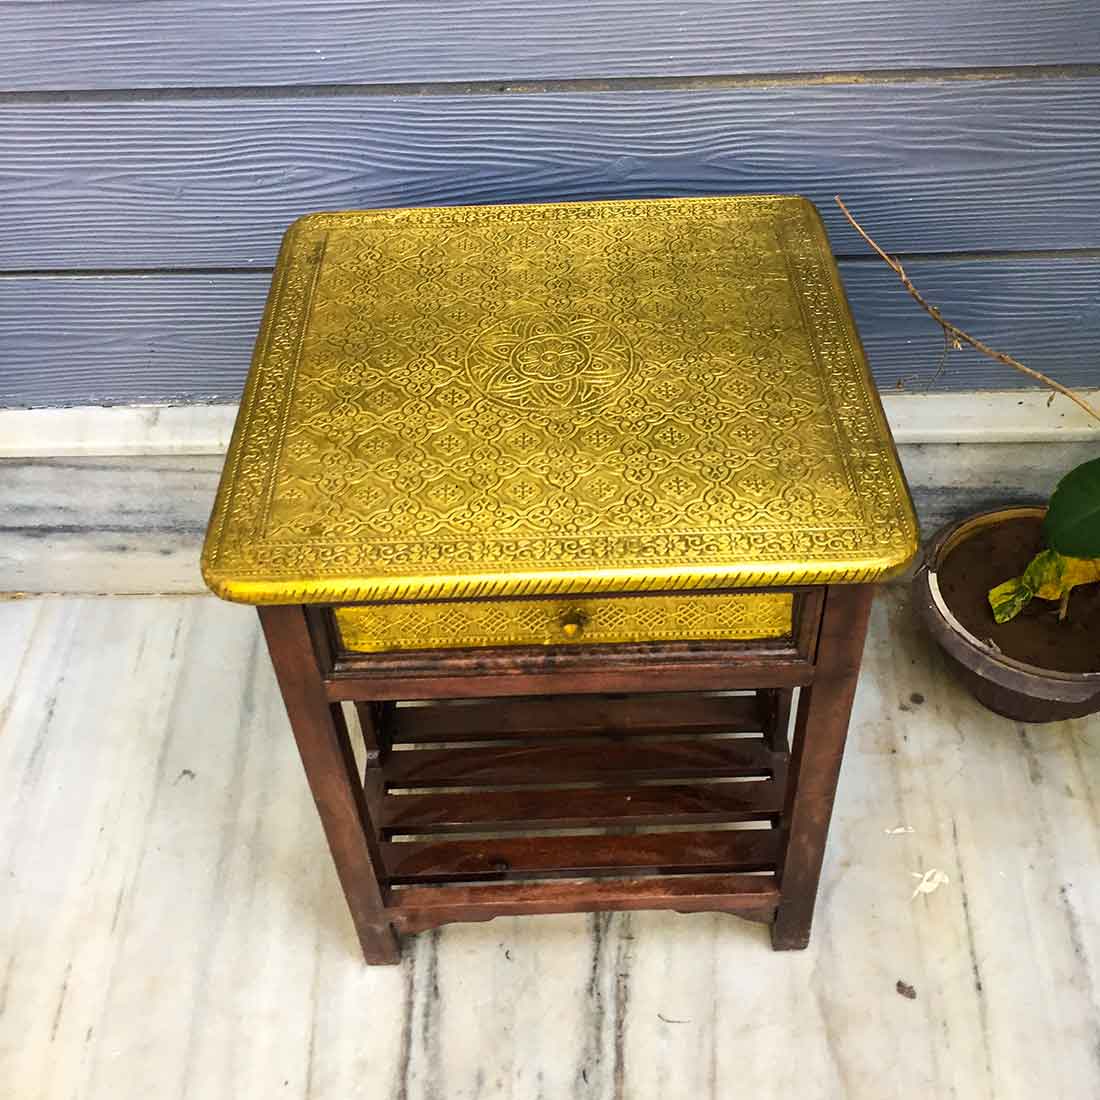 Bedside Table with Drawer - Brass Embellished | Side Table with Storage - for Bedroom & Living Room - ApkaMart